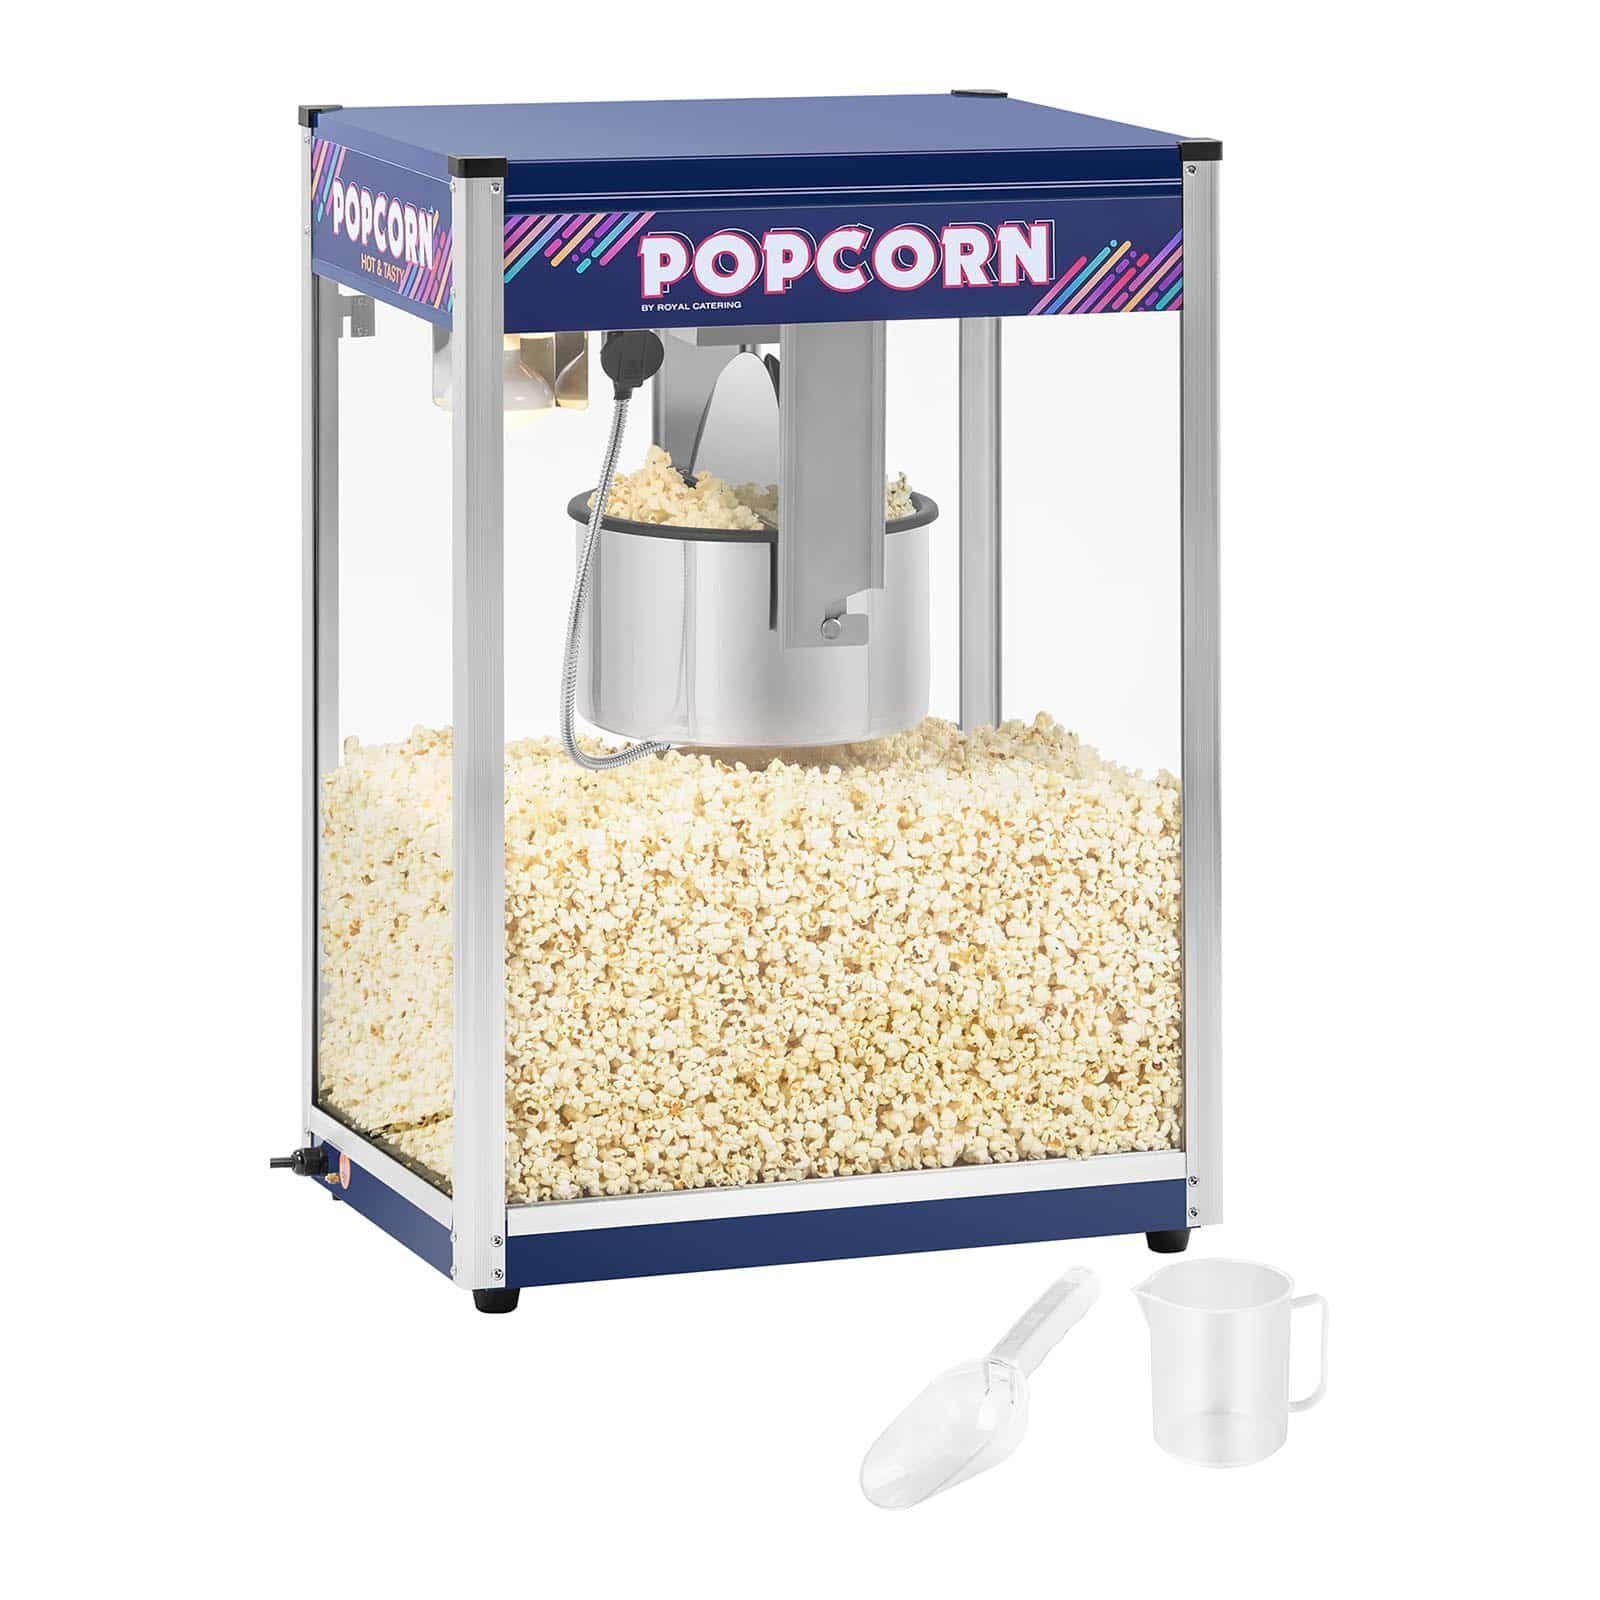 Royal Catering Popcornmaschine Popcornmaschine Popcorn Maschine Popcornmaker Popcornautomat Maker